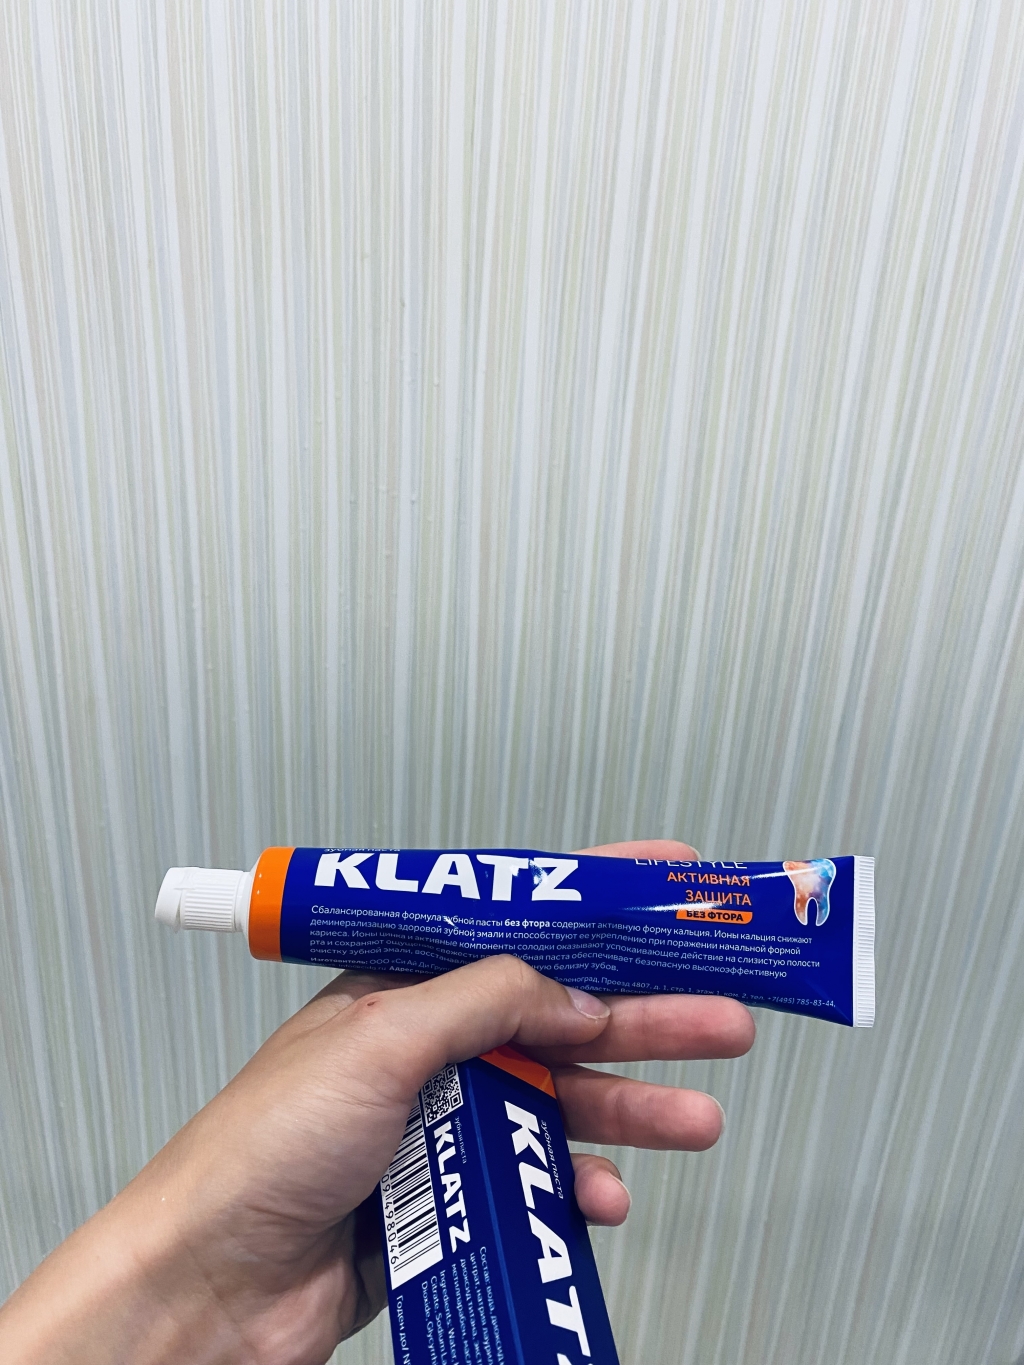 Klatz зубная паста - Необычная паста за доступную стоимость